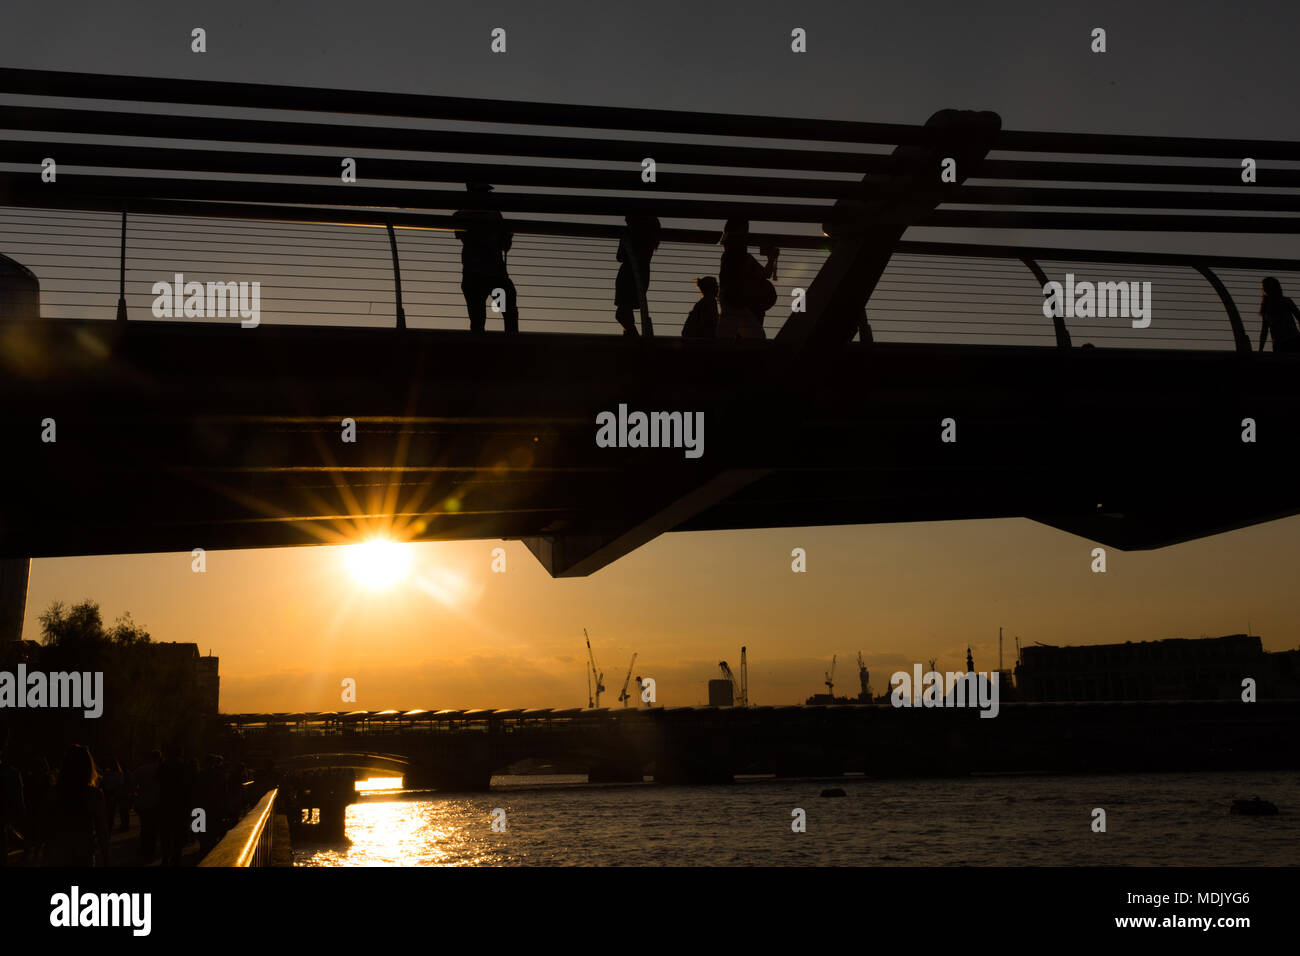 Londres, Royaume-Uni. 19 avril, 2018. Météo France : magnifique coucher de soleil sur la Tamise, avec Millennium Bridge en silhouette à Londres, Royaume-Uni Crédit : Carol MoirAlamy Live News Stock Photo Banque D'Images